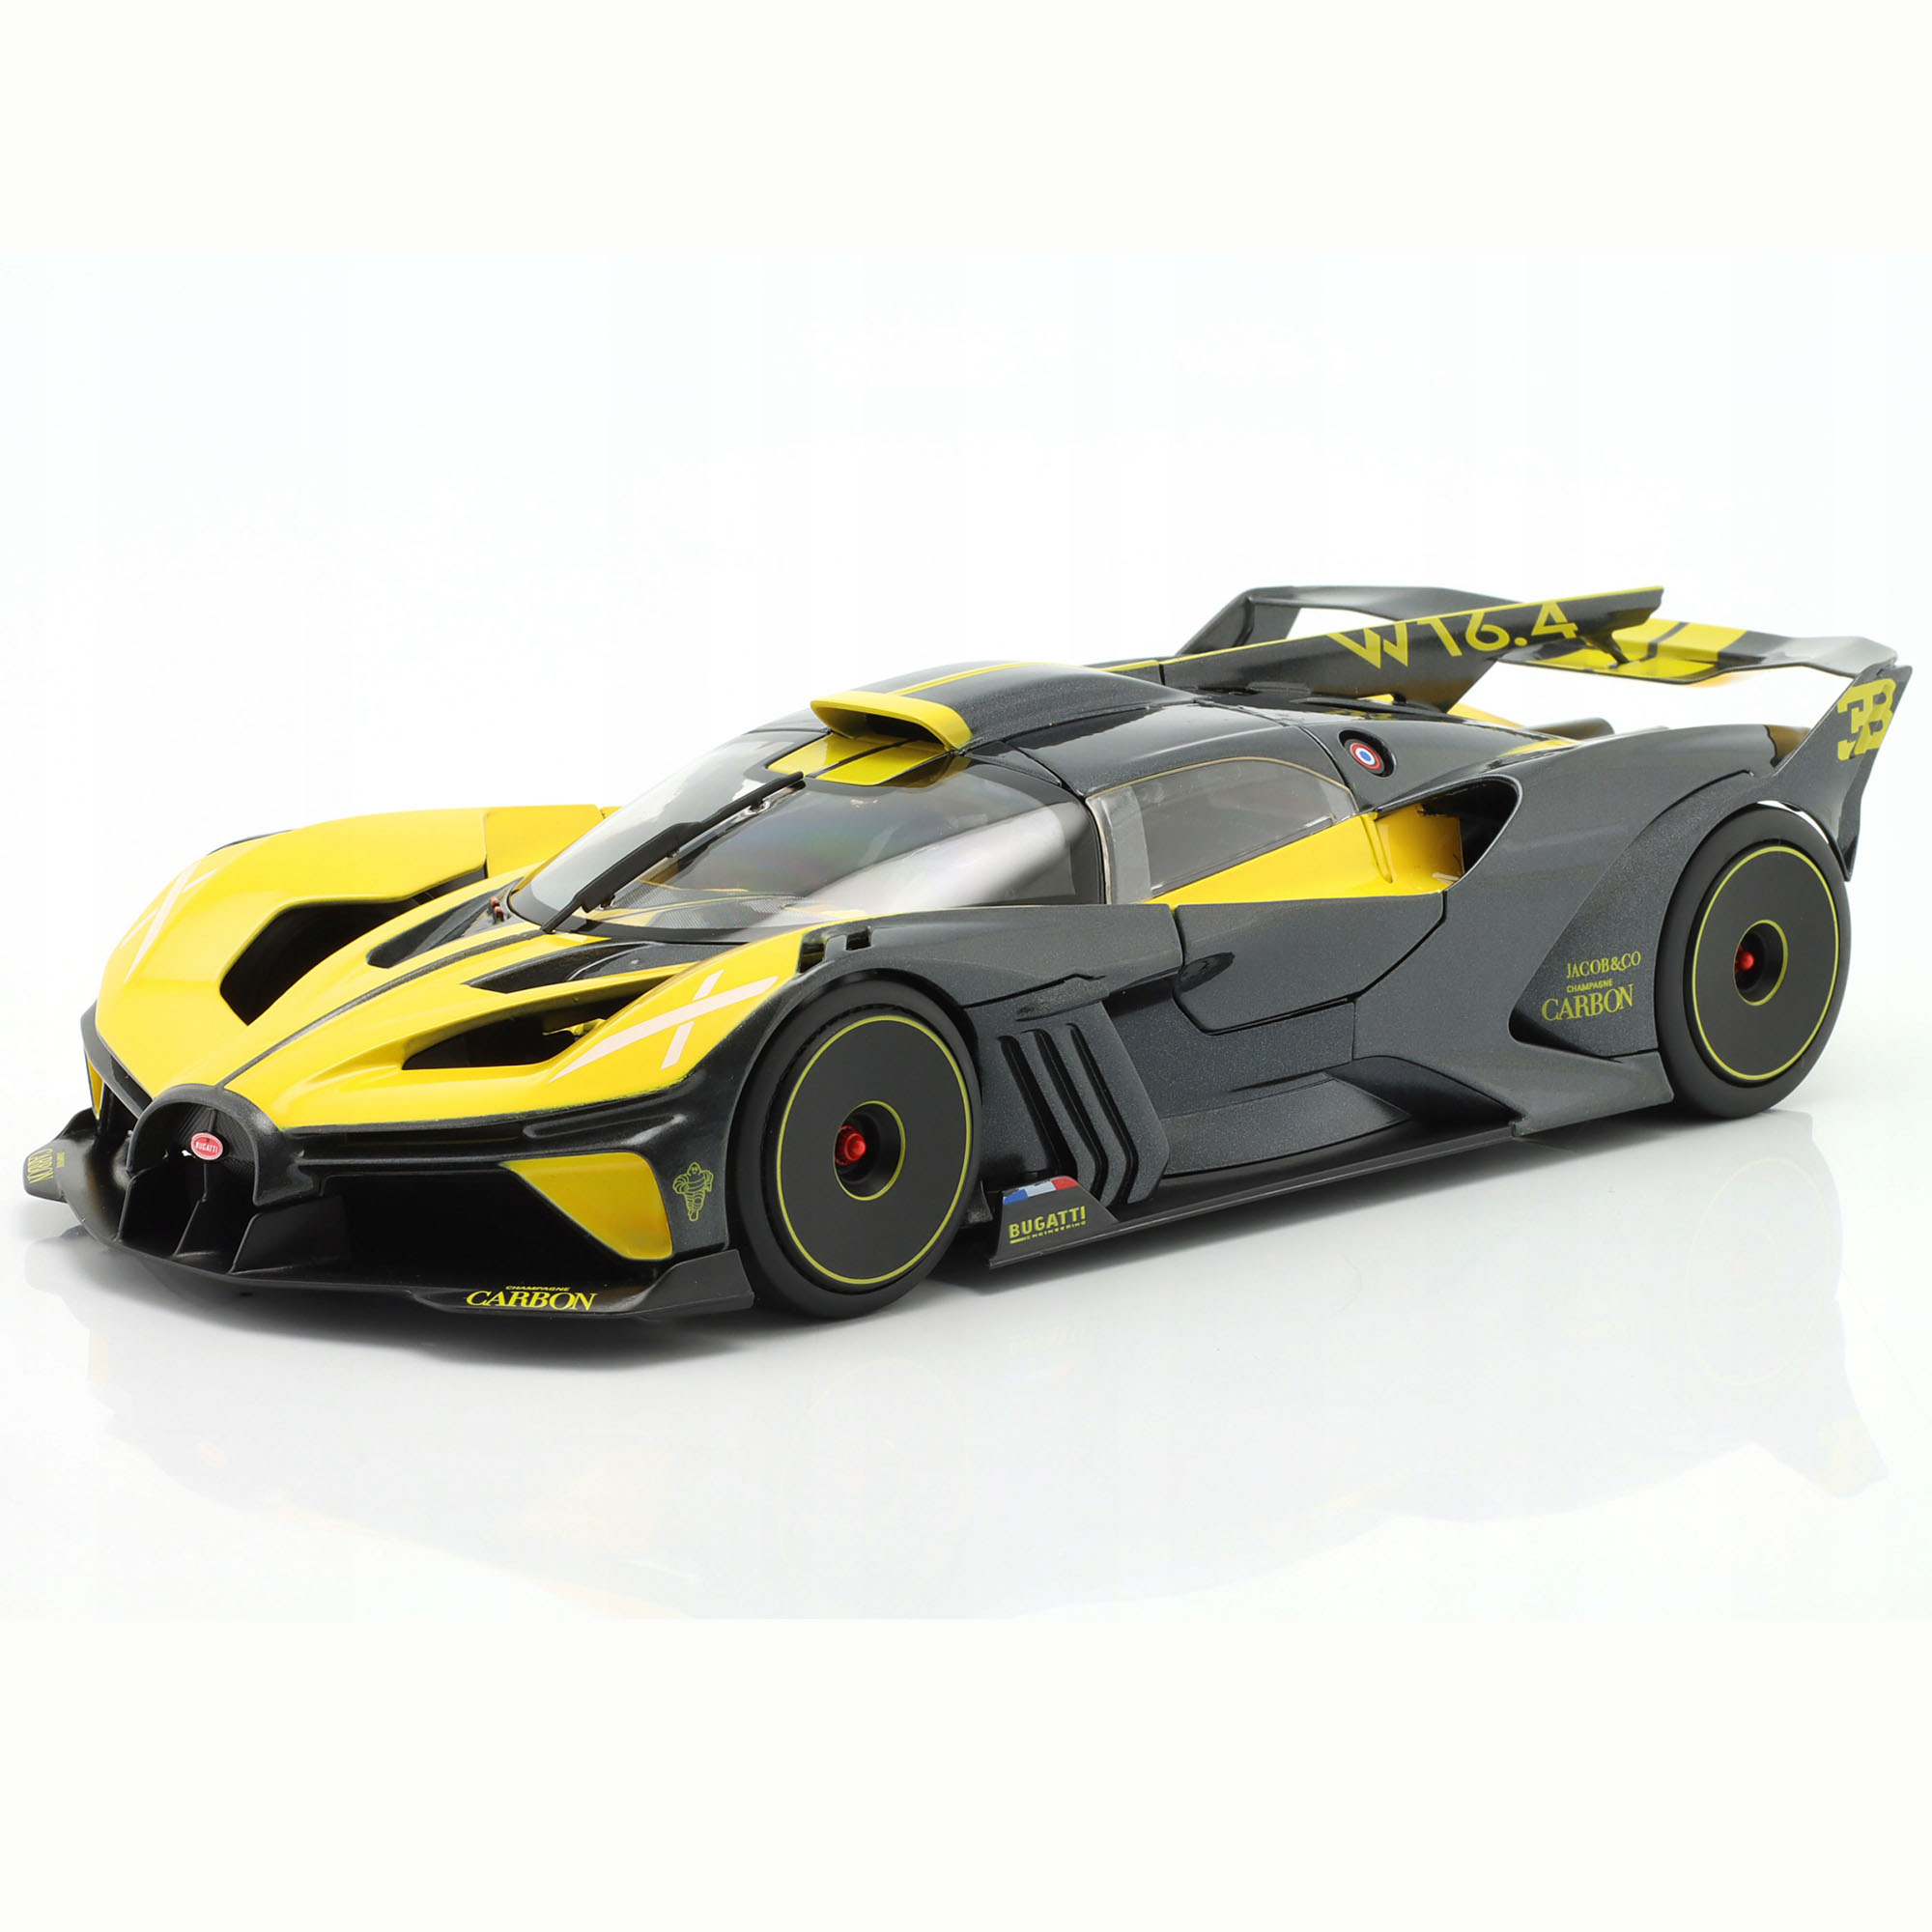 Машинка металлическая Bburago Bugatti Bolide, 1:18, желтая, 18-11047YL